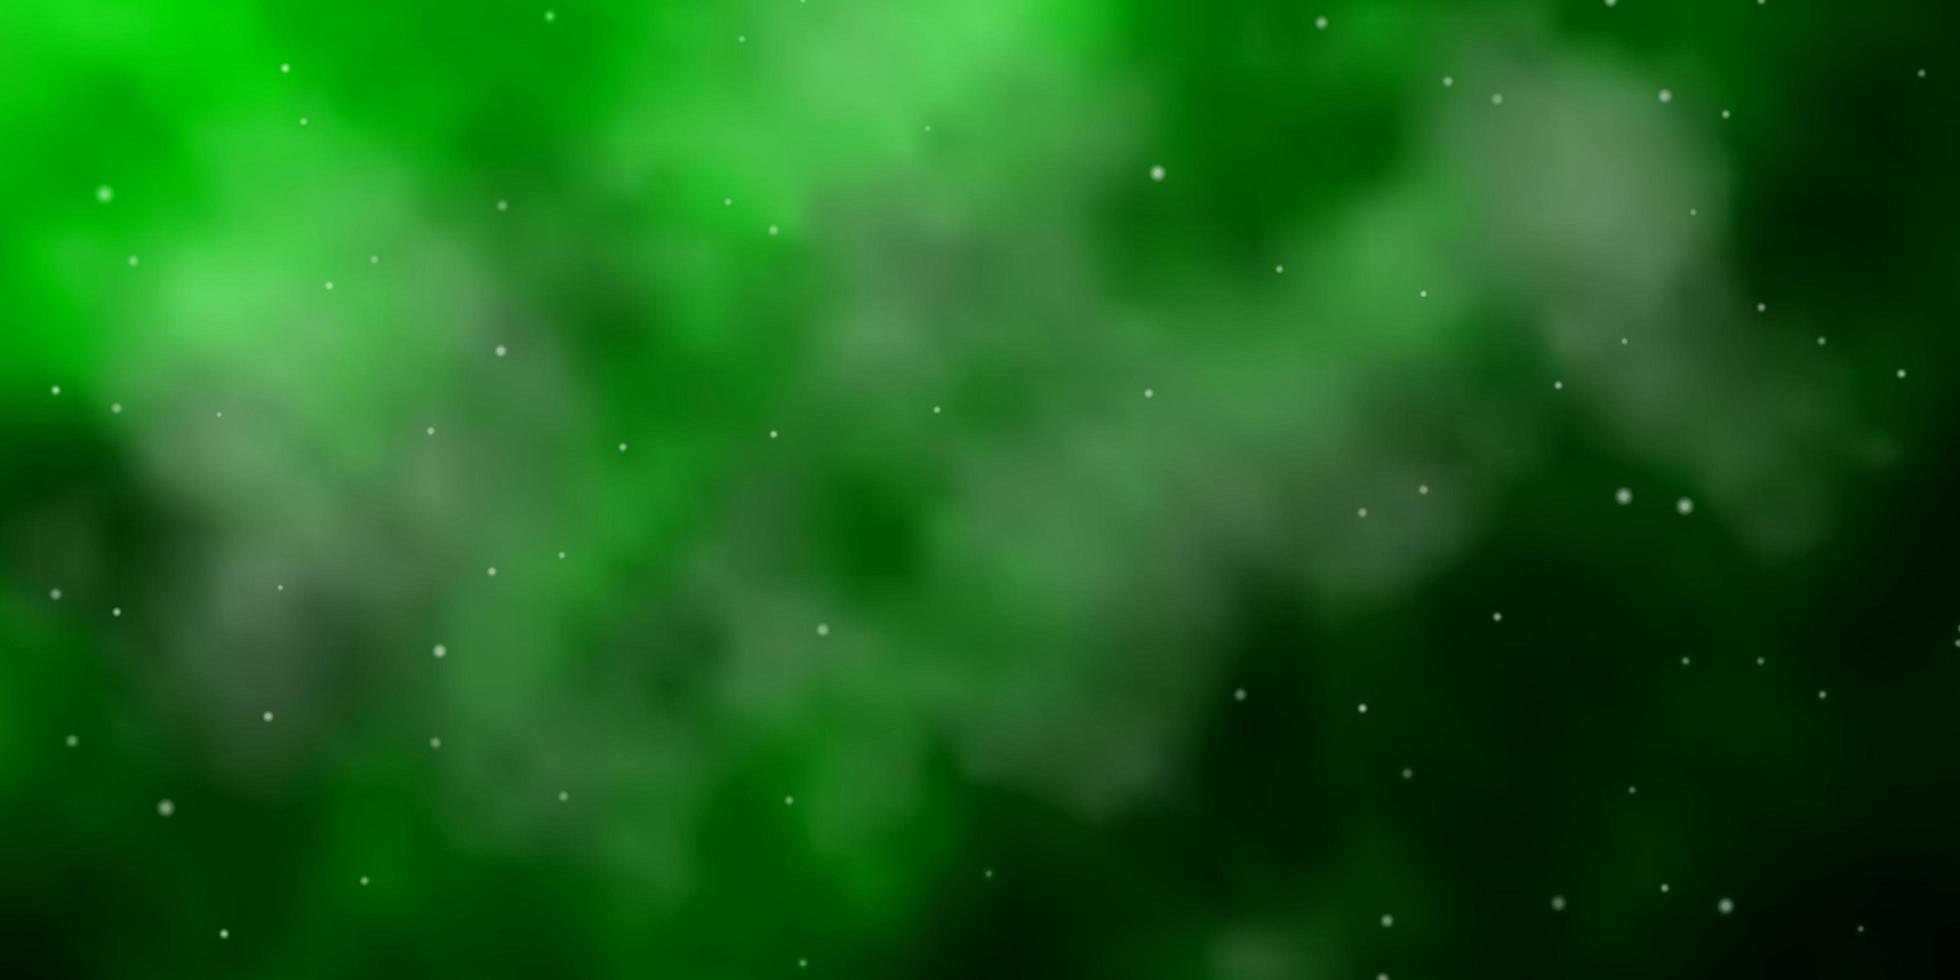 plantilla verde claro con estrellas de neón. vector